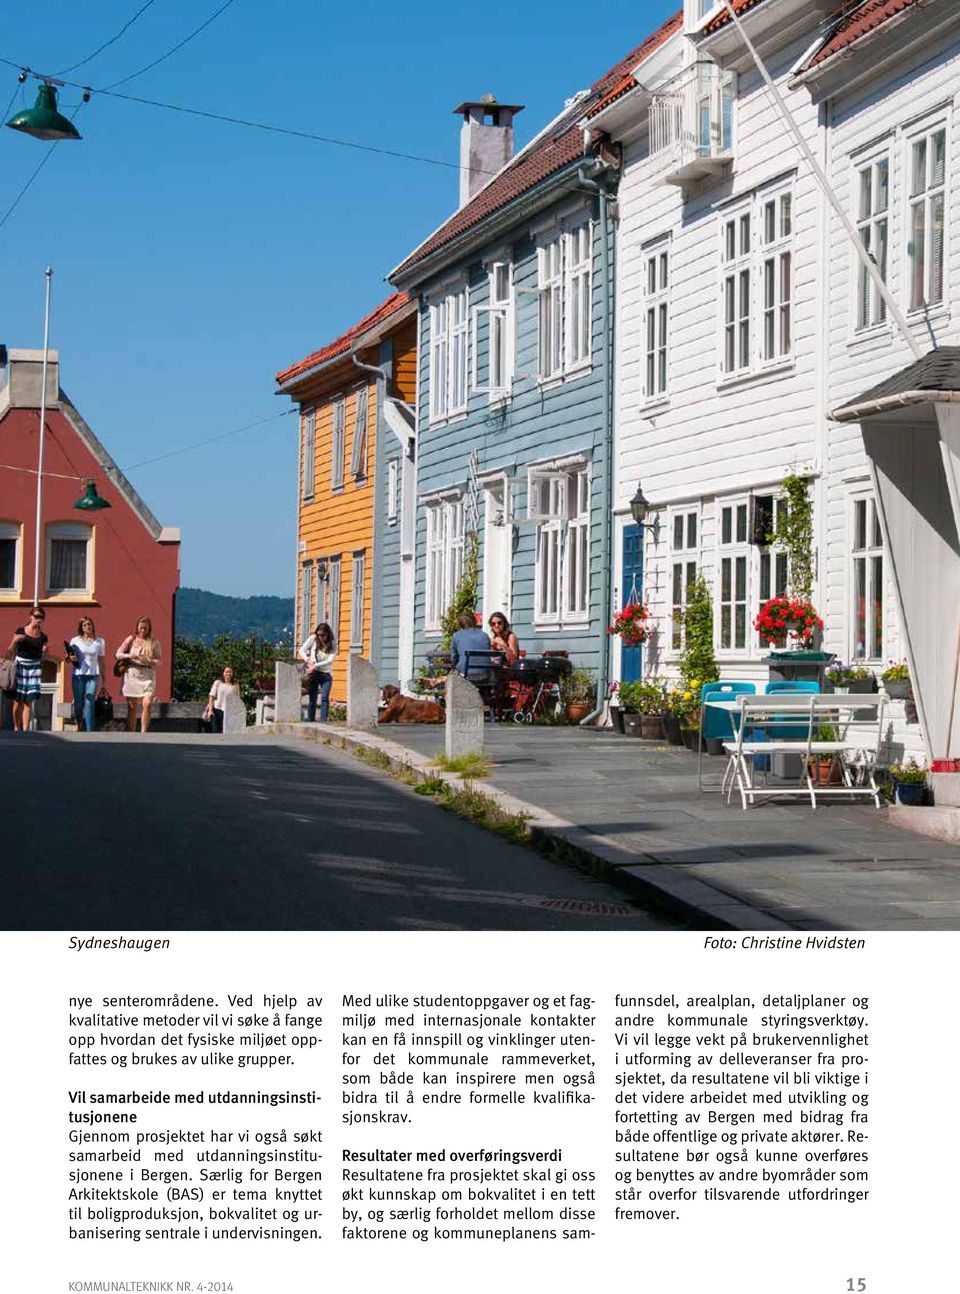 Særlig for Bergen Arkitektskole (BAS) er tema knyttet til boligproduksjon, bokvalitet og urbanisering sentrale i undervisningen.